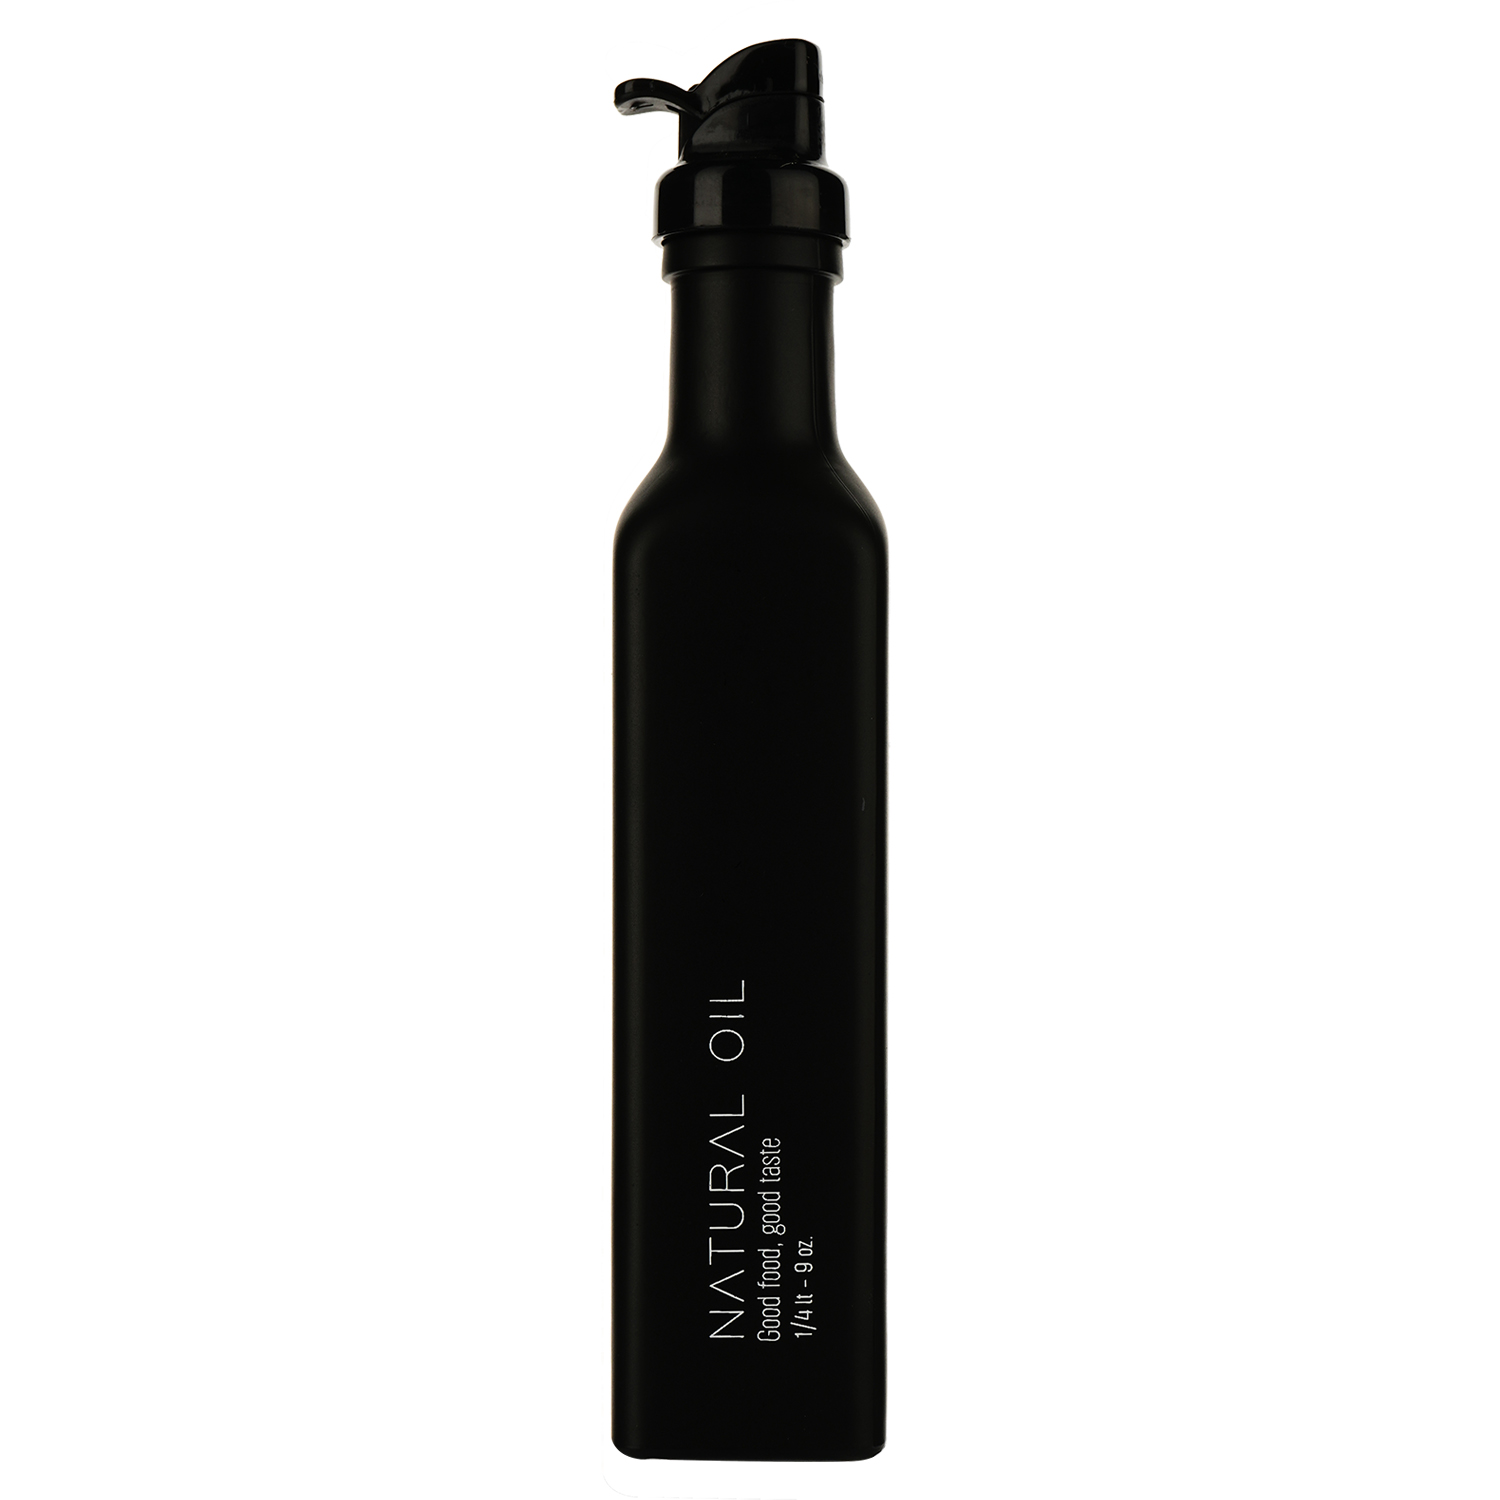 Бутылка для масла SnT матовая черная 250 мл (7-583) - фото 1